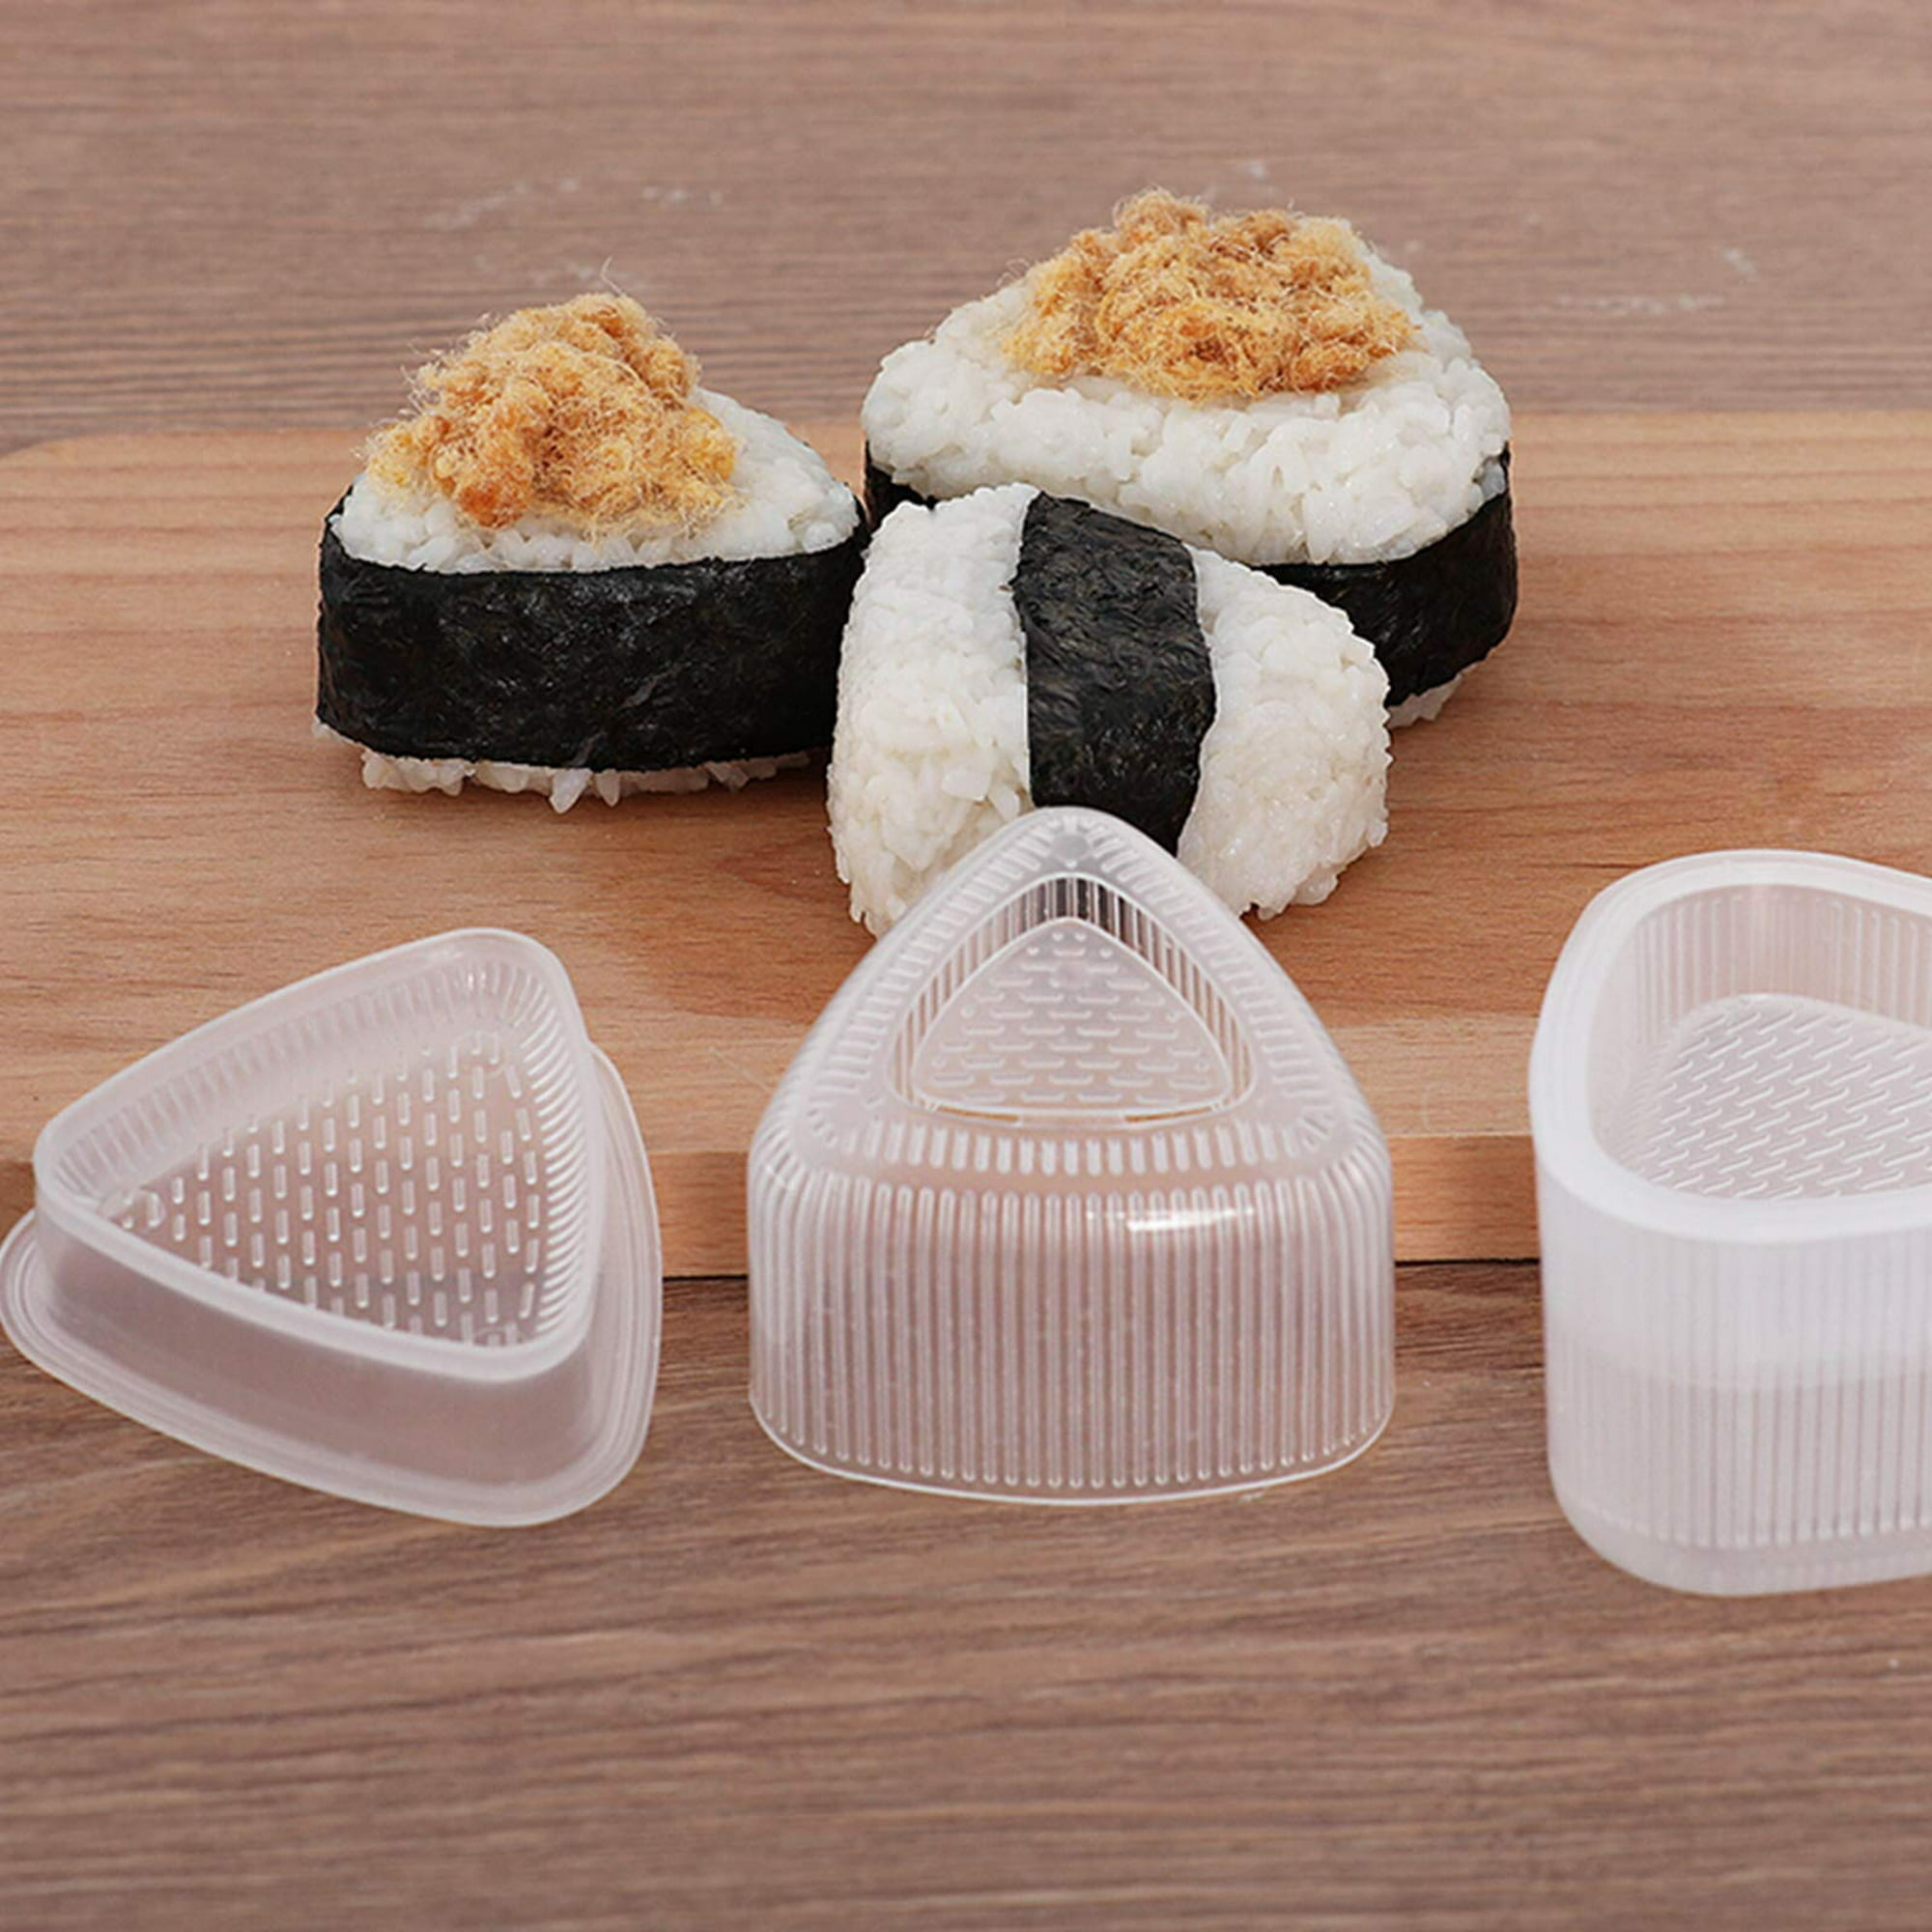 Comprar 1 Juego de moldes Onigiri antiadherentes para hacer bolas de arroz  triangulares ligeras, Kit de herramientas para Sushi, utensilios de cocina